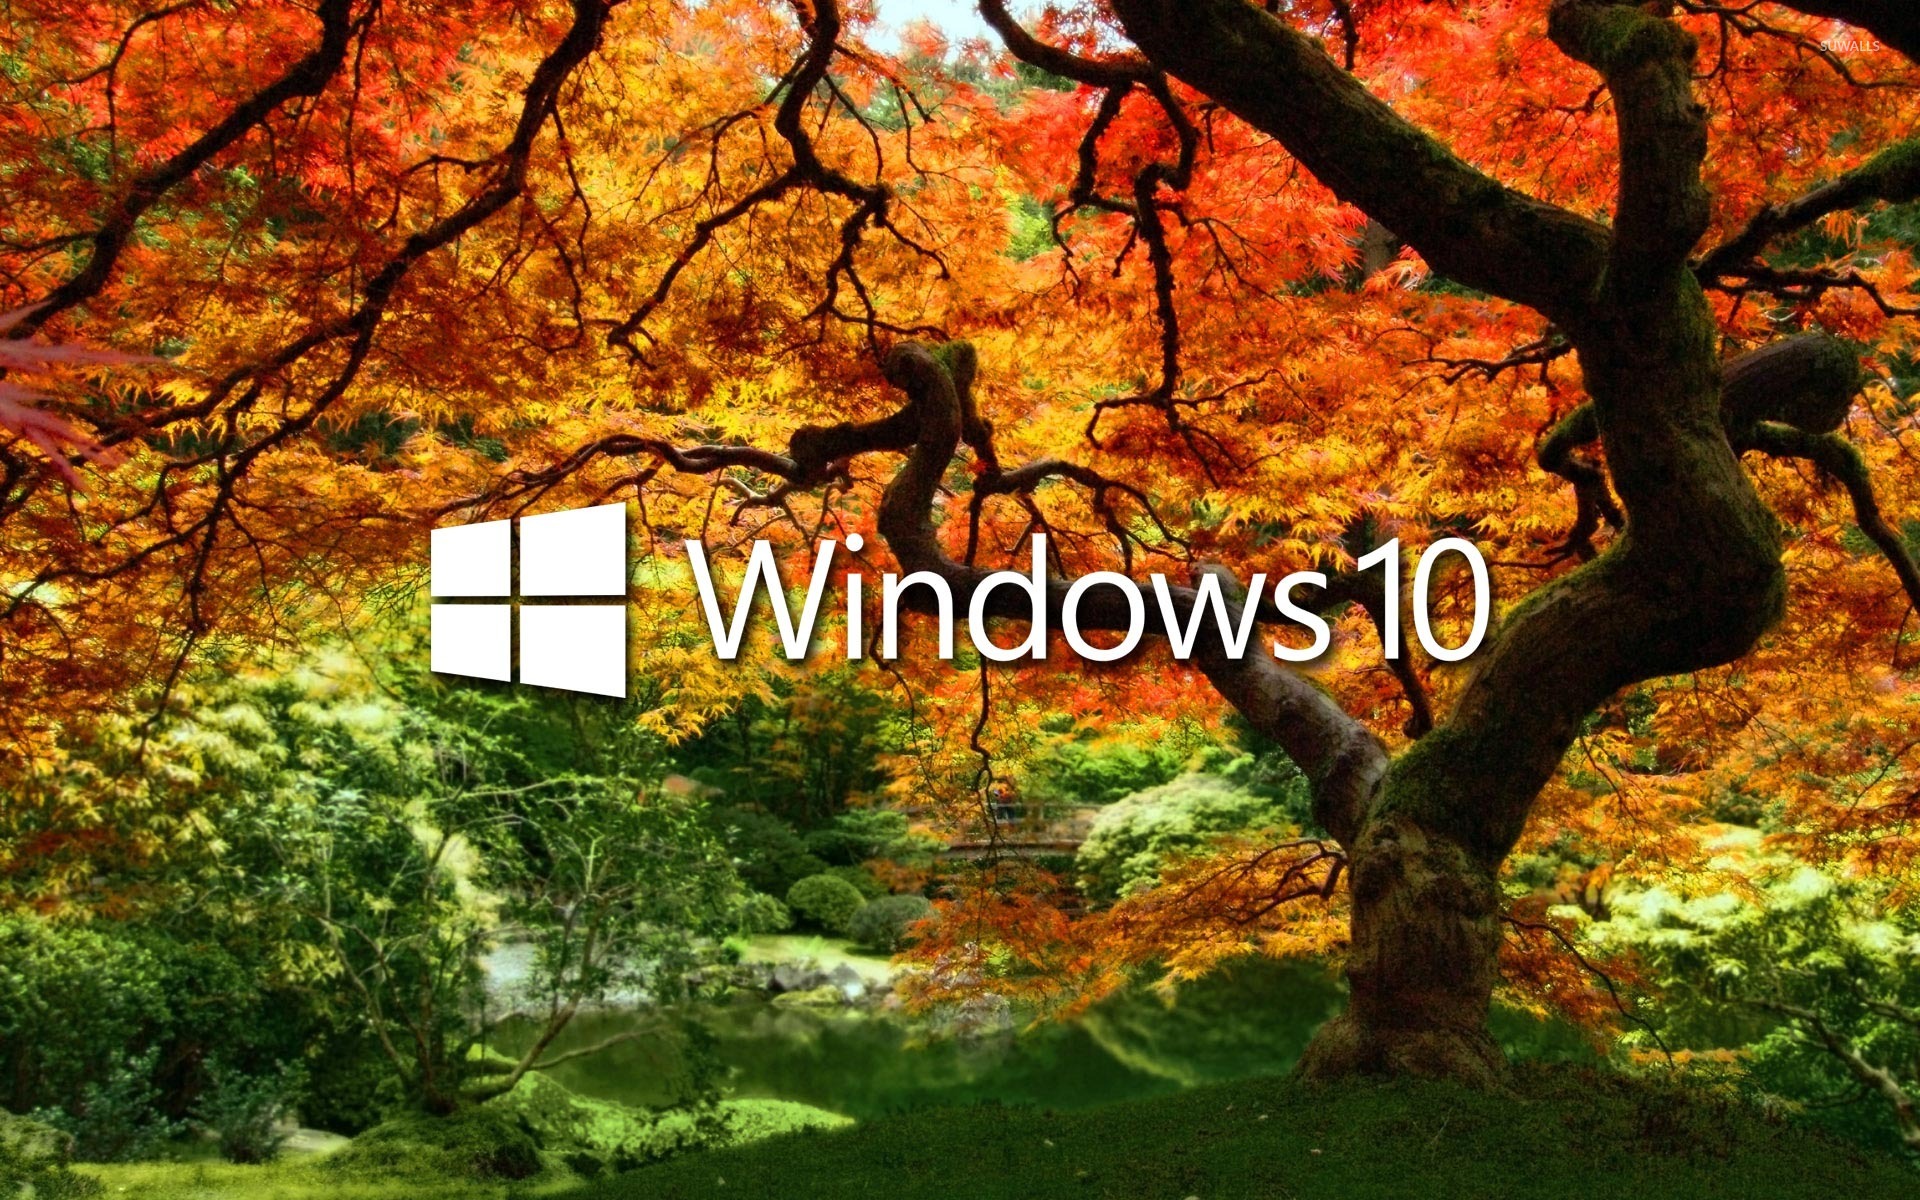 Windows 10 On The Orange Tree White Text Logo Wallpaper Computer